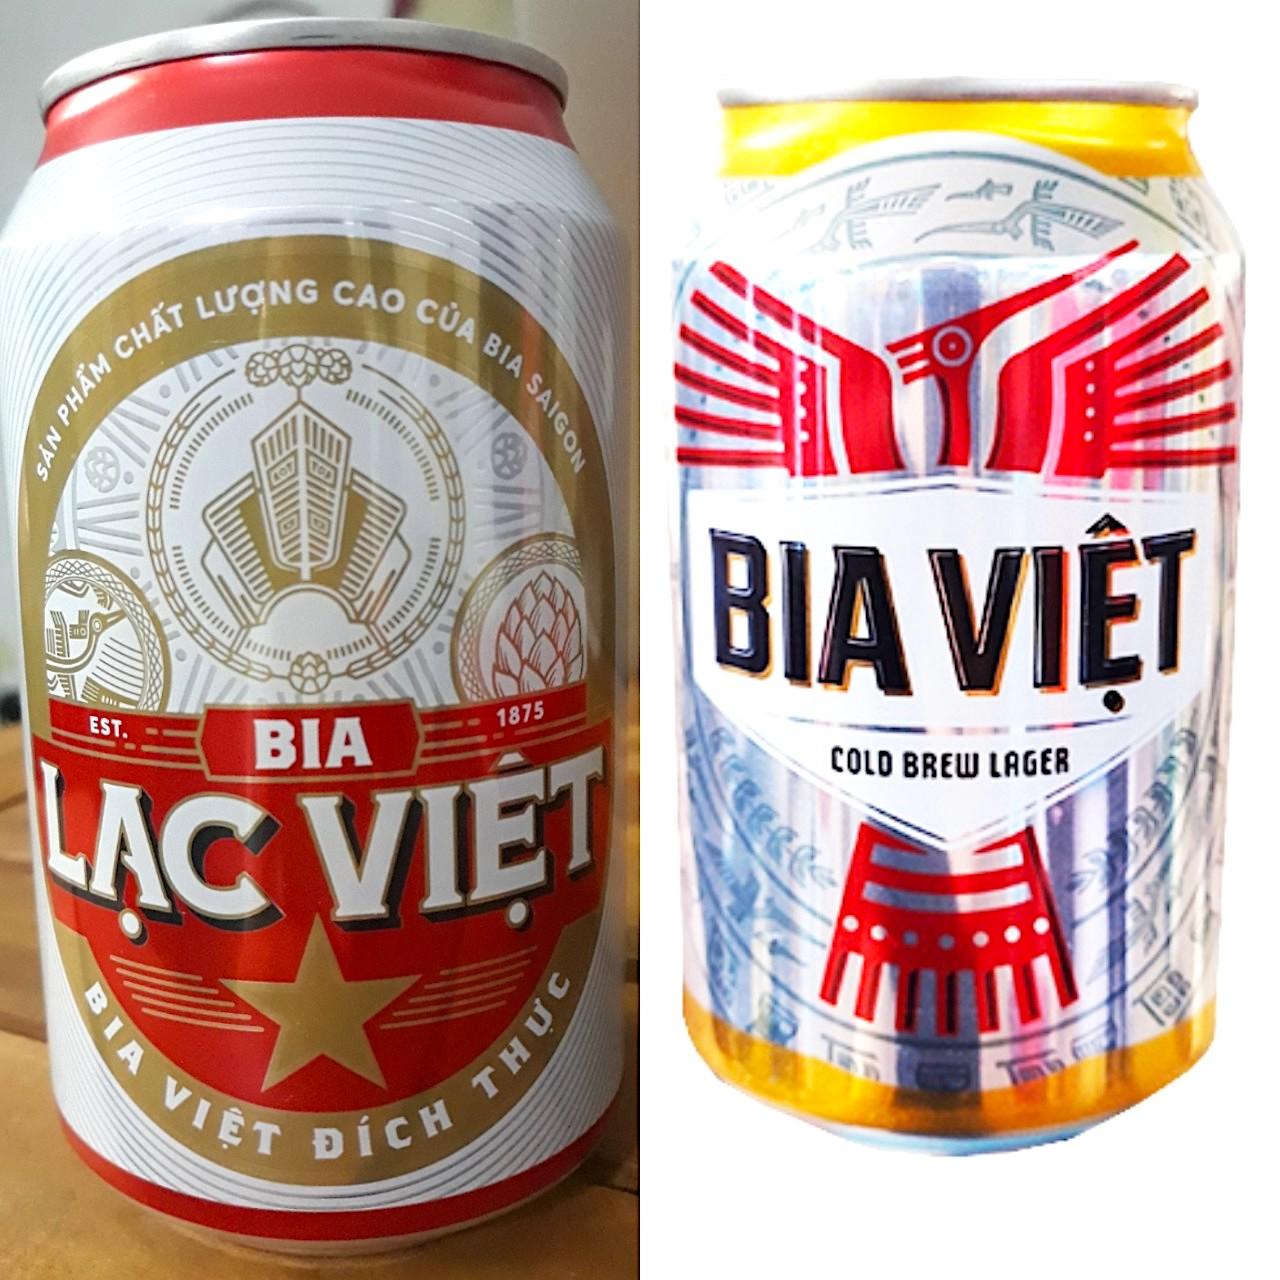 Sabeco ra mắt bia Lạc Việt có phân khúc giá tương tự bia Việt của Heineken Việt Nam